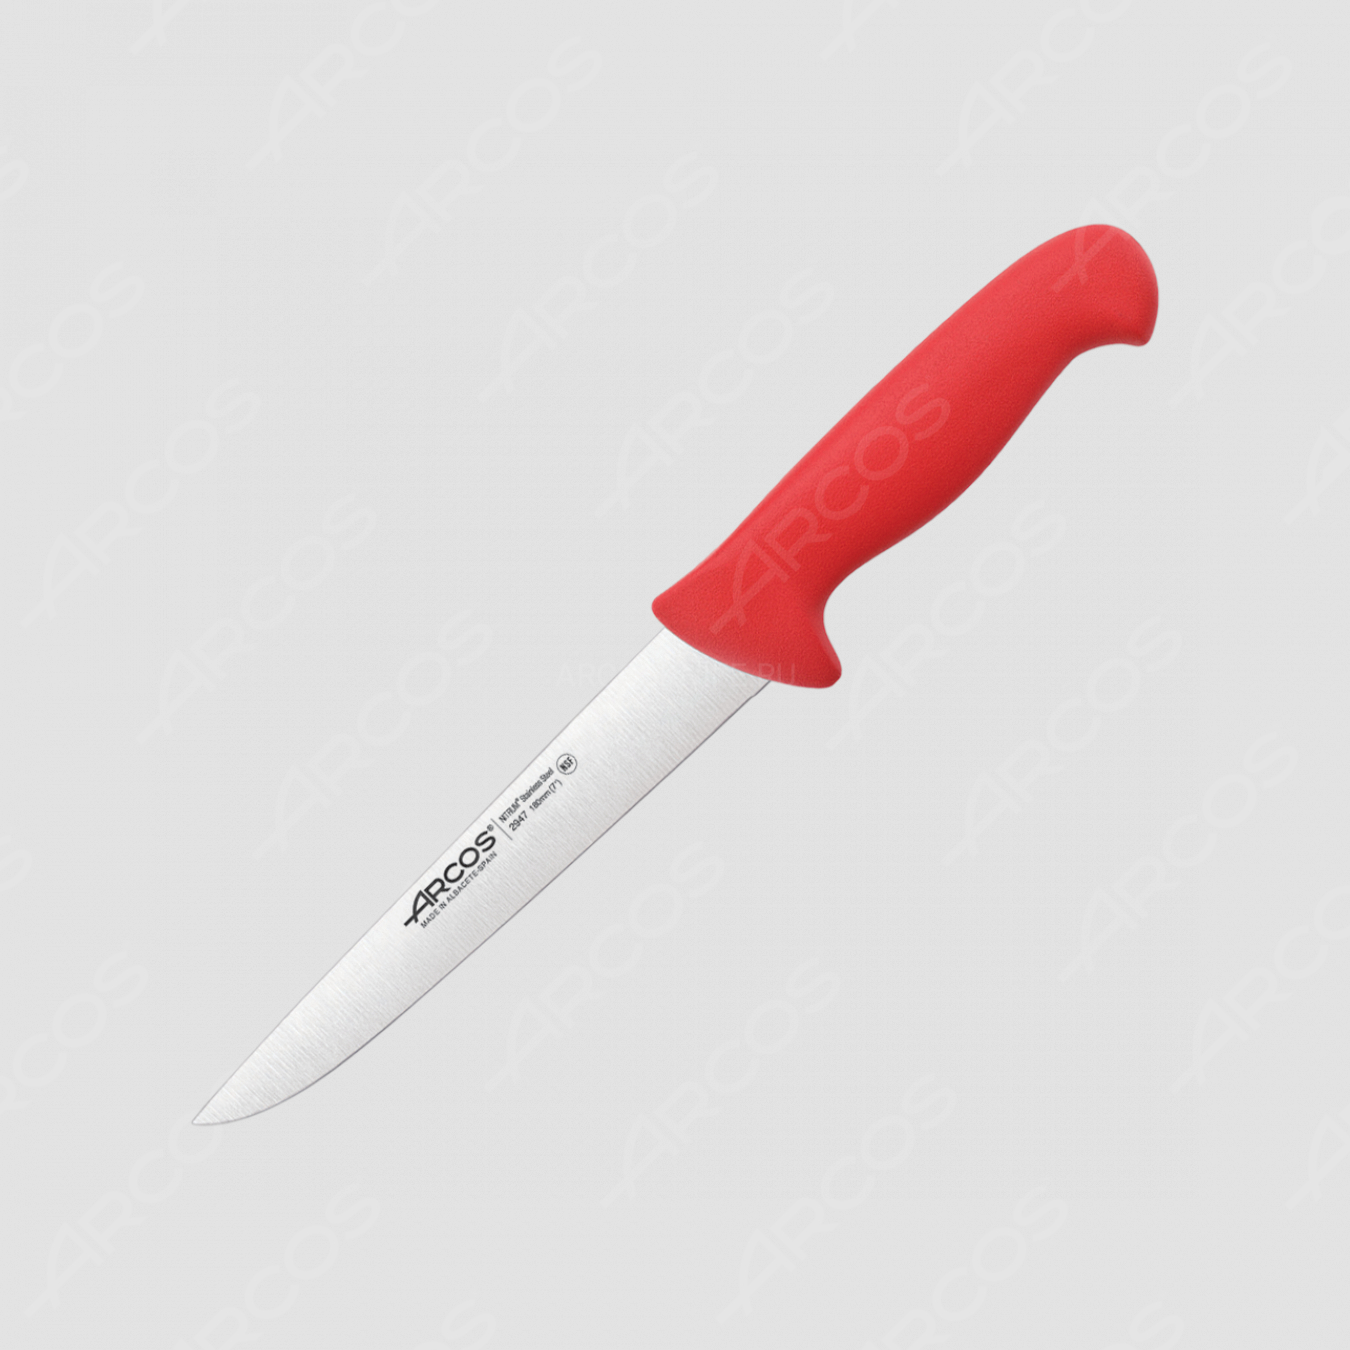 Нож кухонный для разделки мяса 18 см, рукоять - красная, серия 2900, ARCOS, Испания